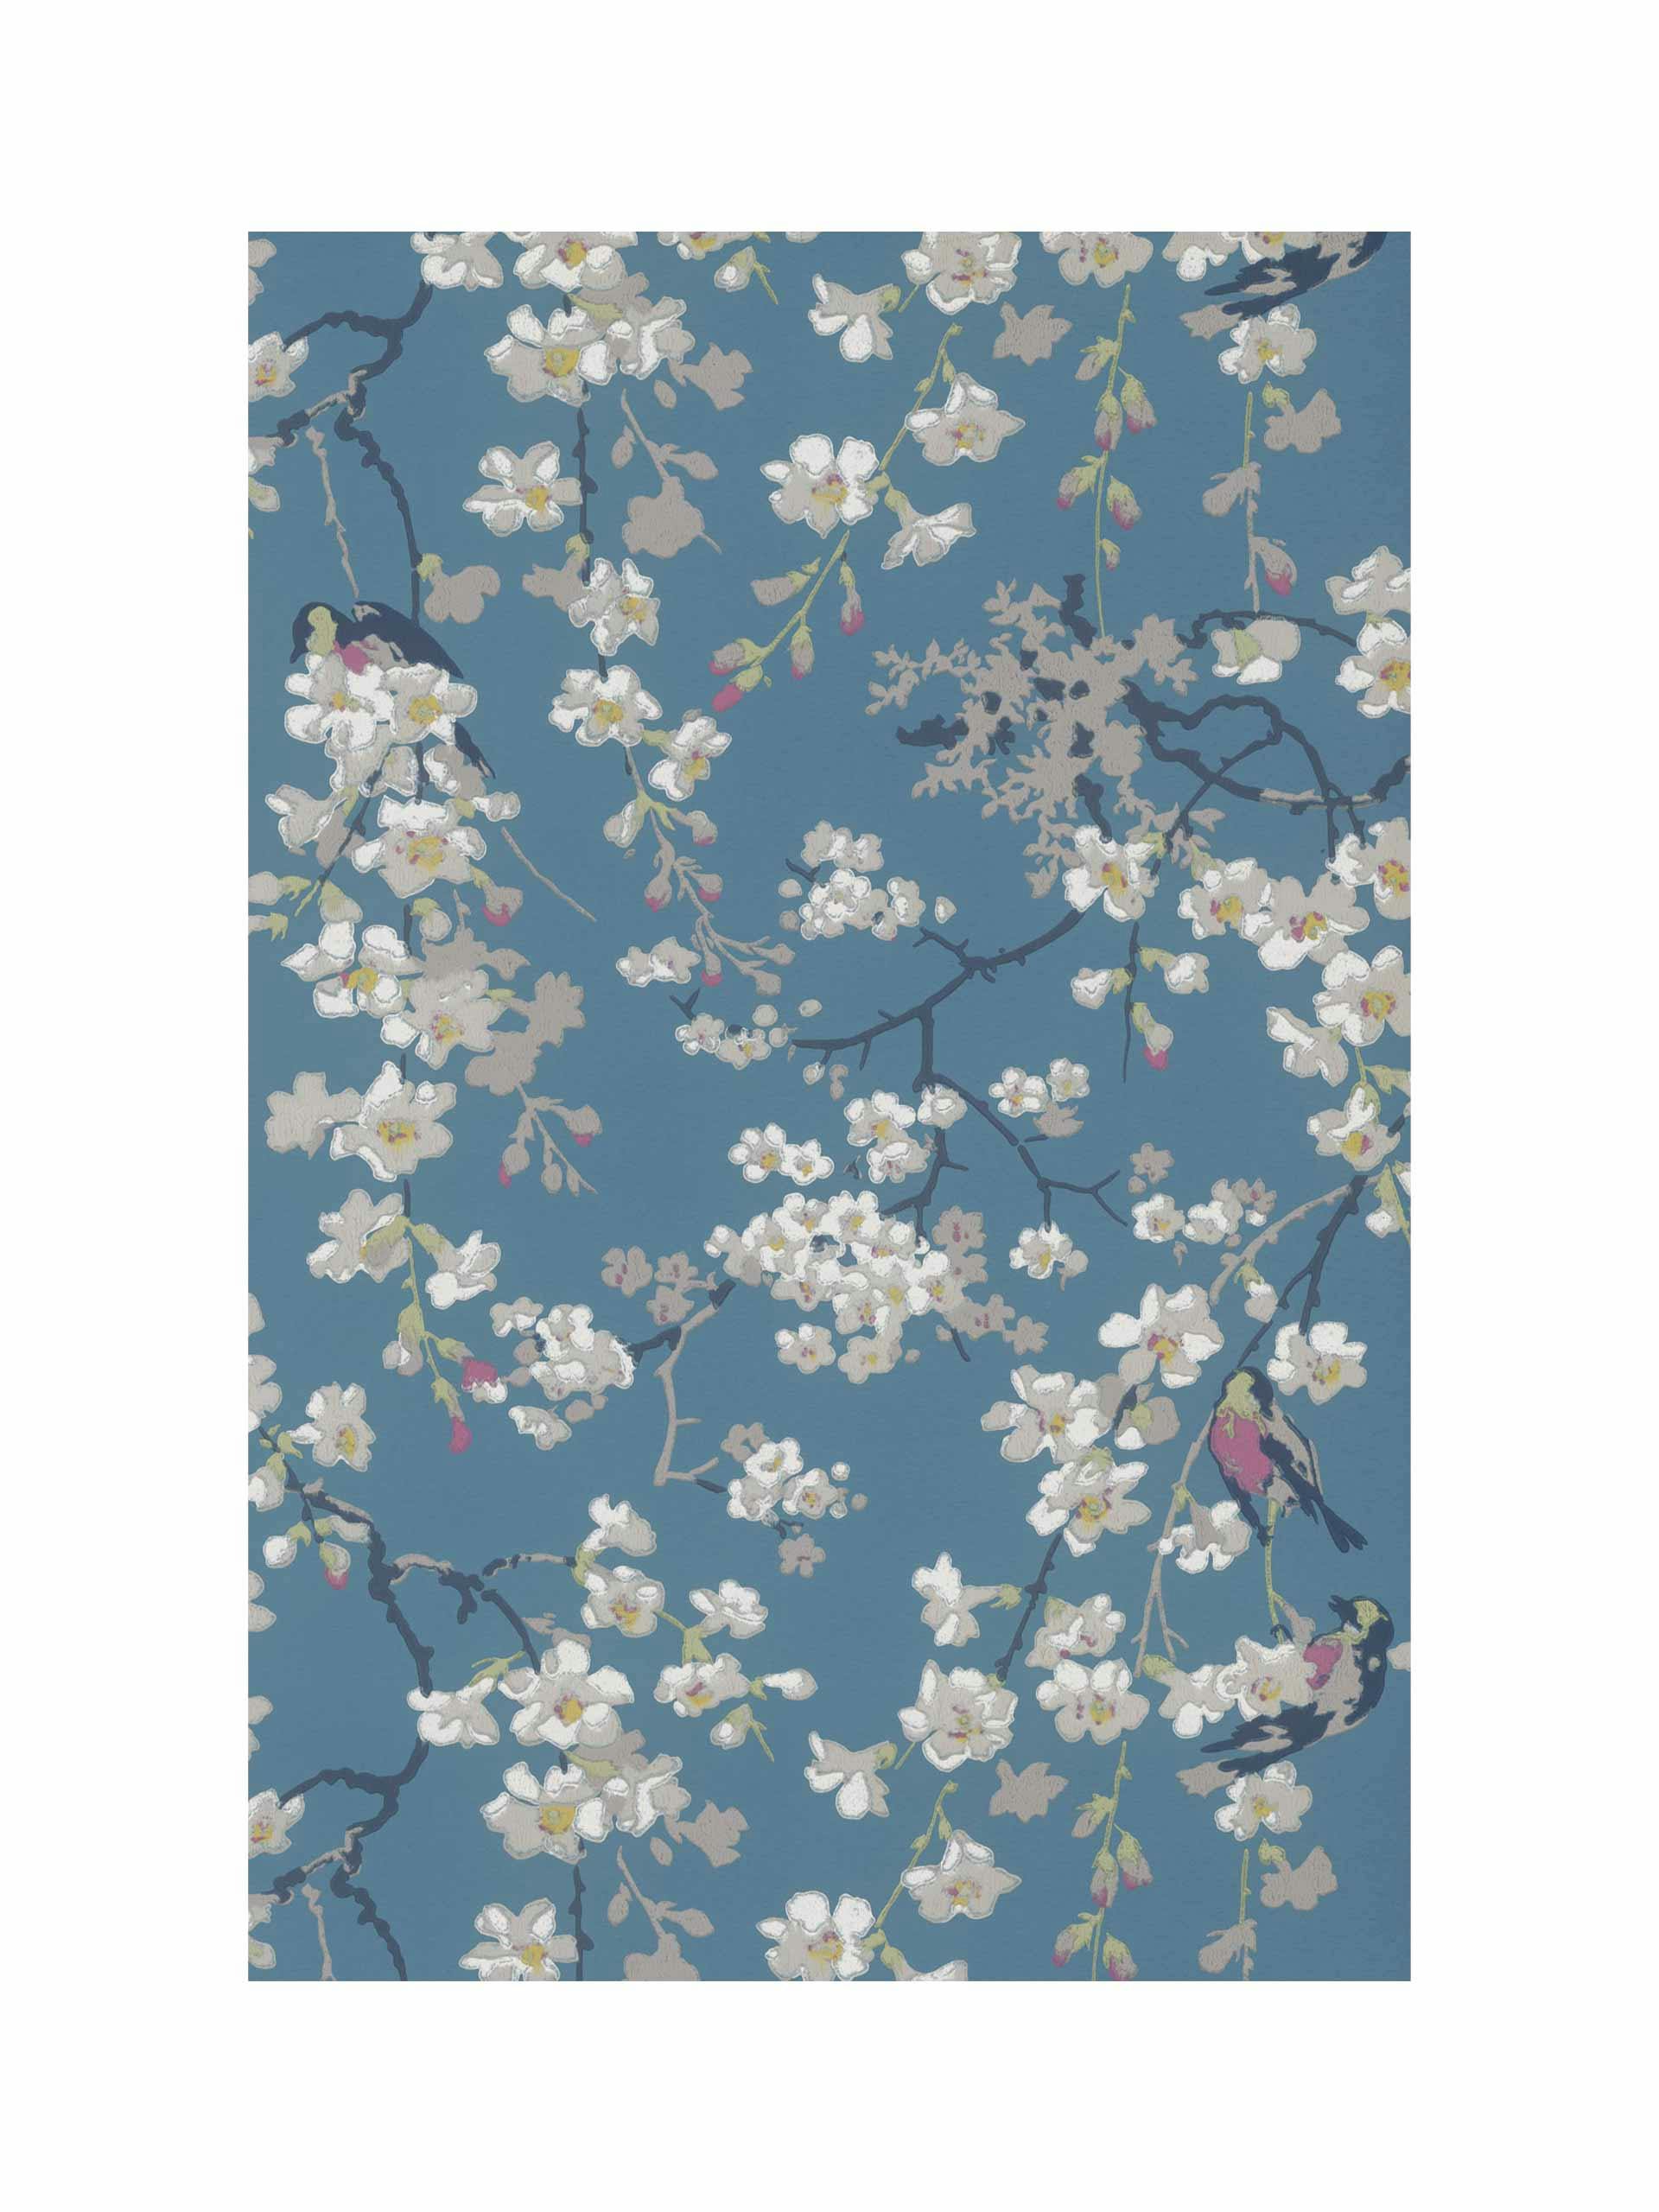 Massingberd Blossom wallpaper in deep blue